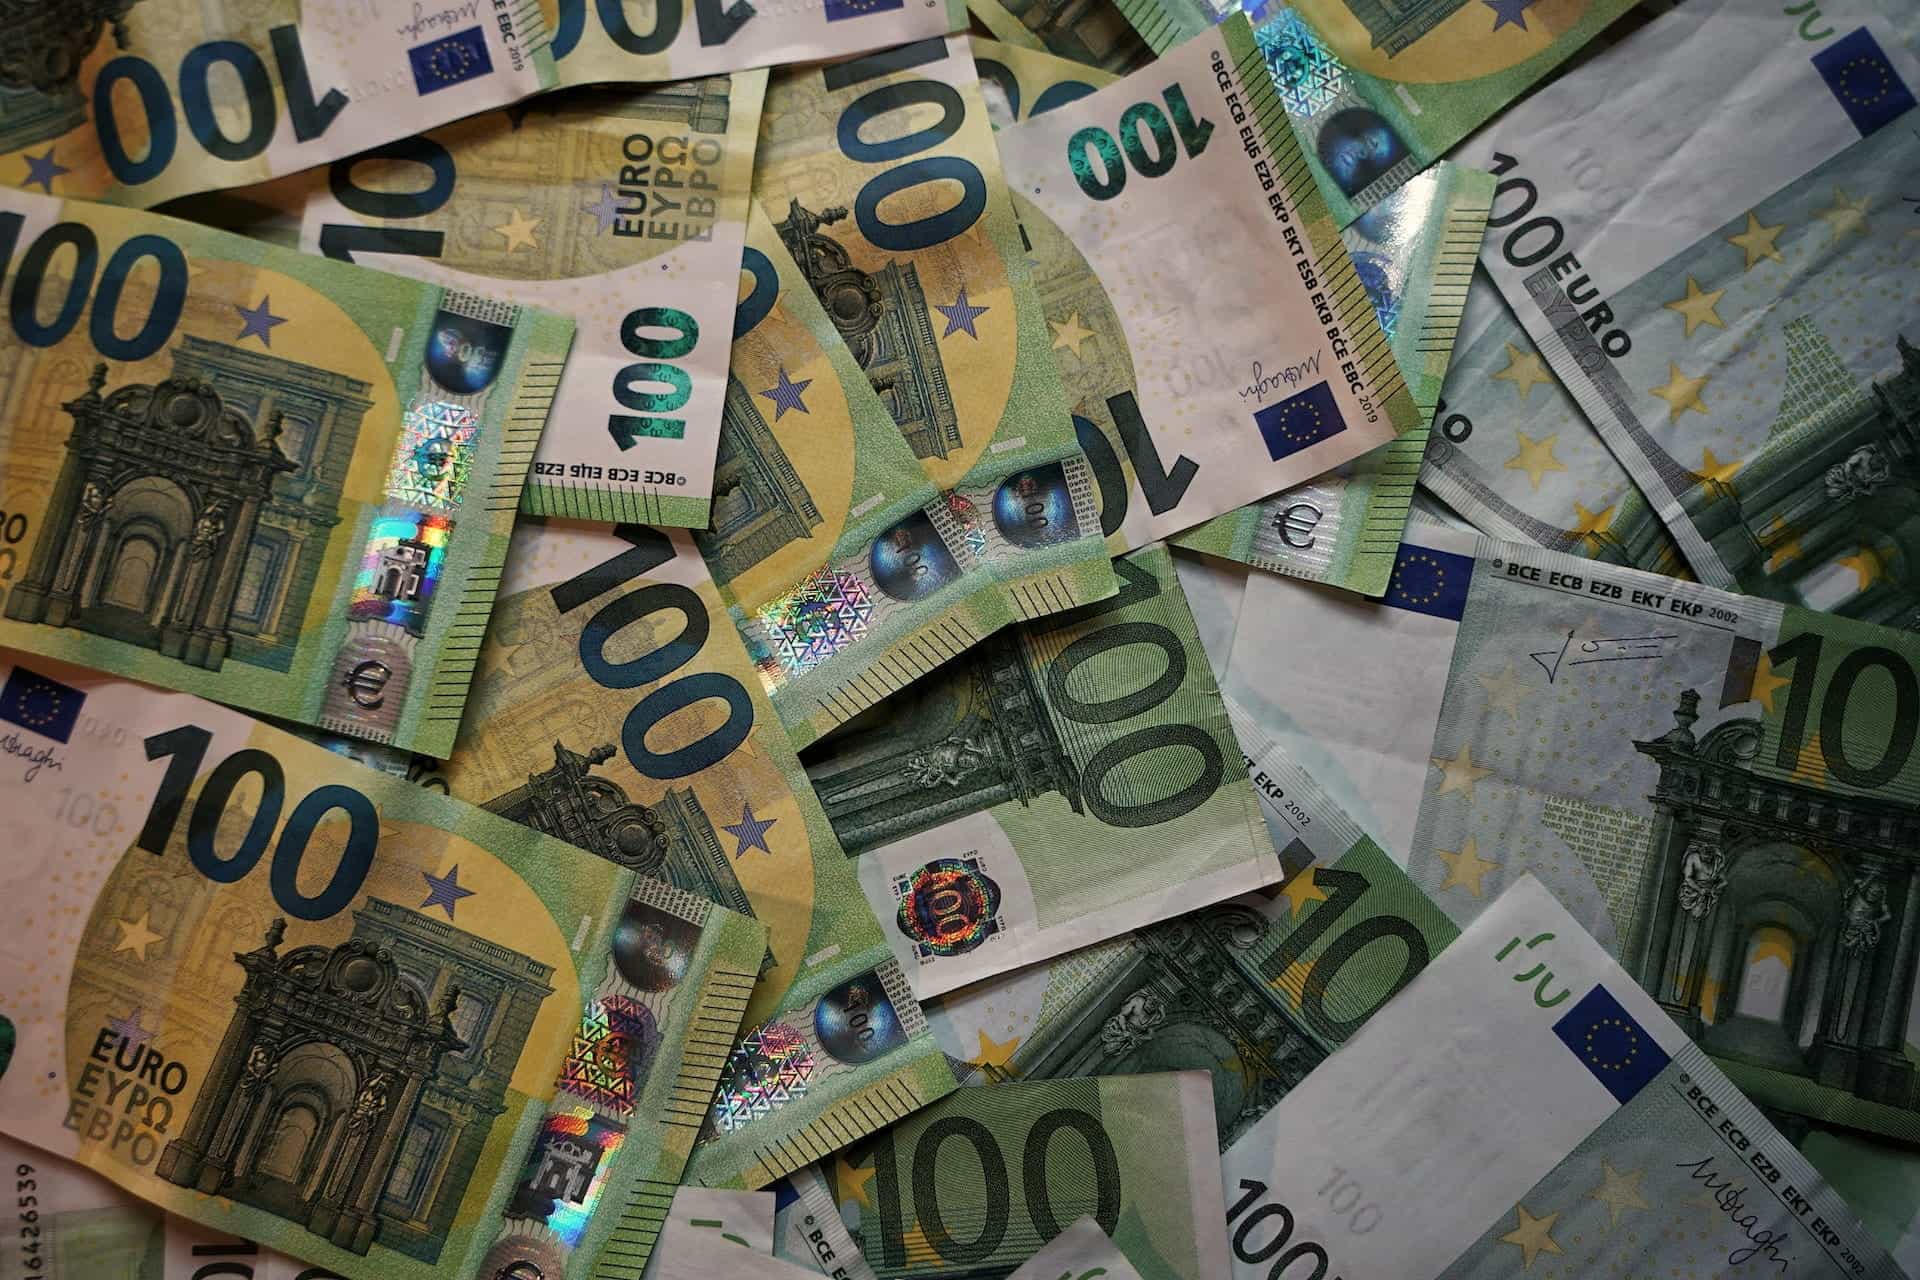 Beberapa lembar uang 100 euro berserakan di atas meja.